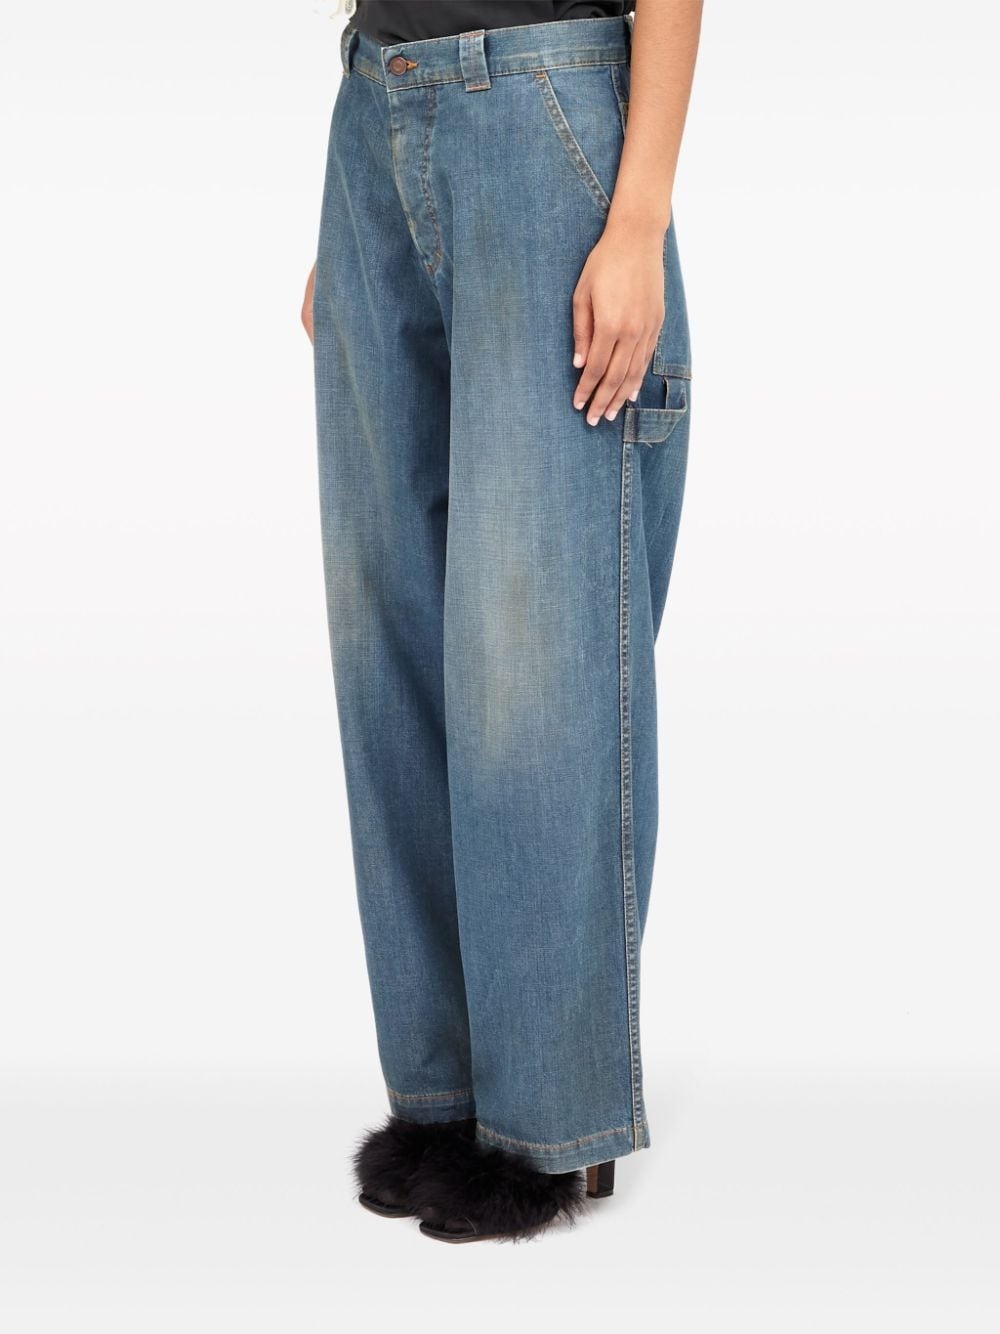 Denim cotton jeans - 5